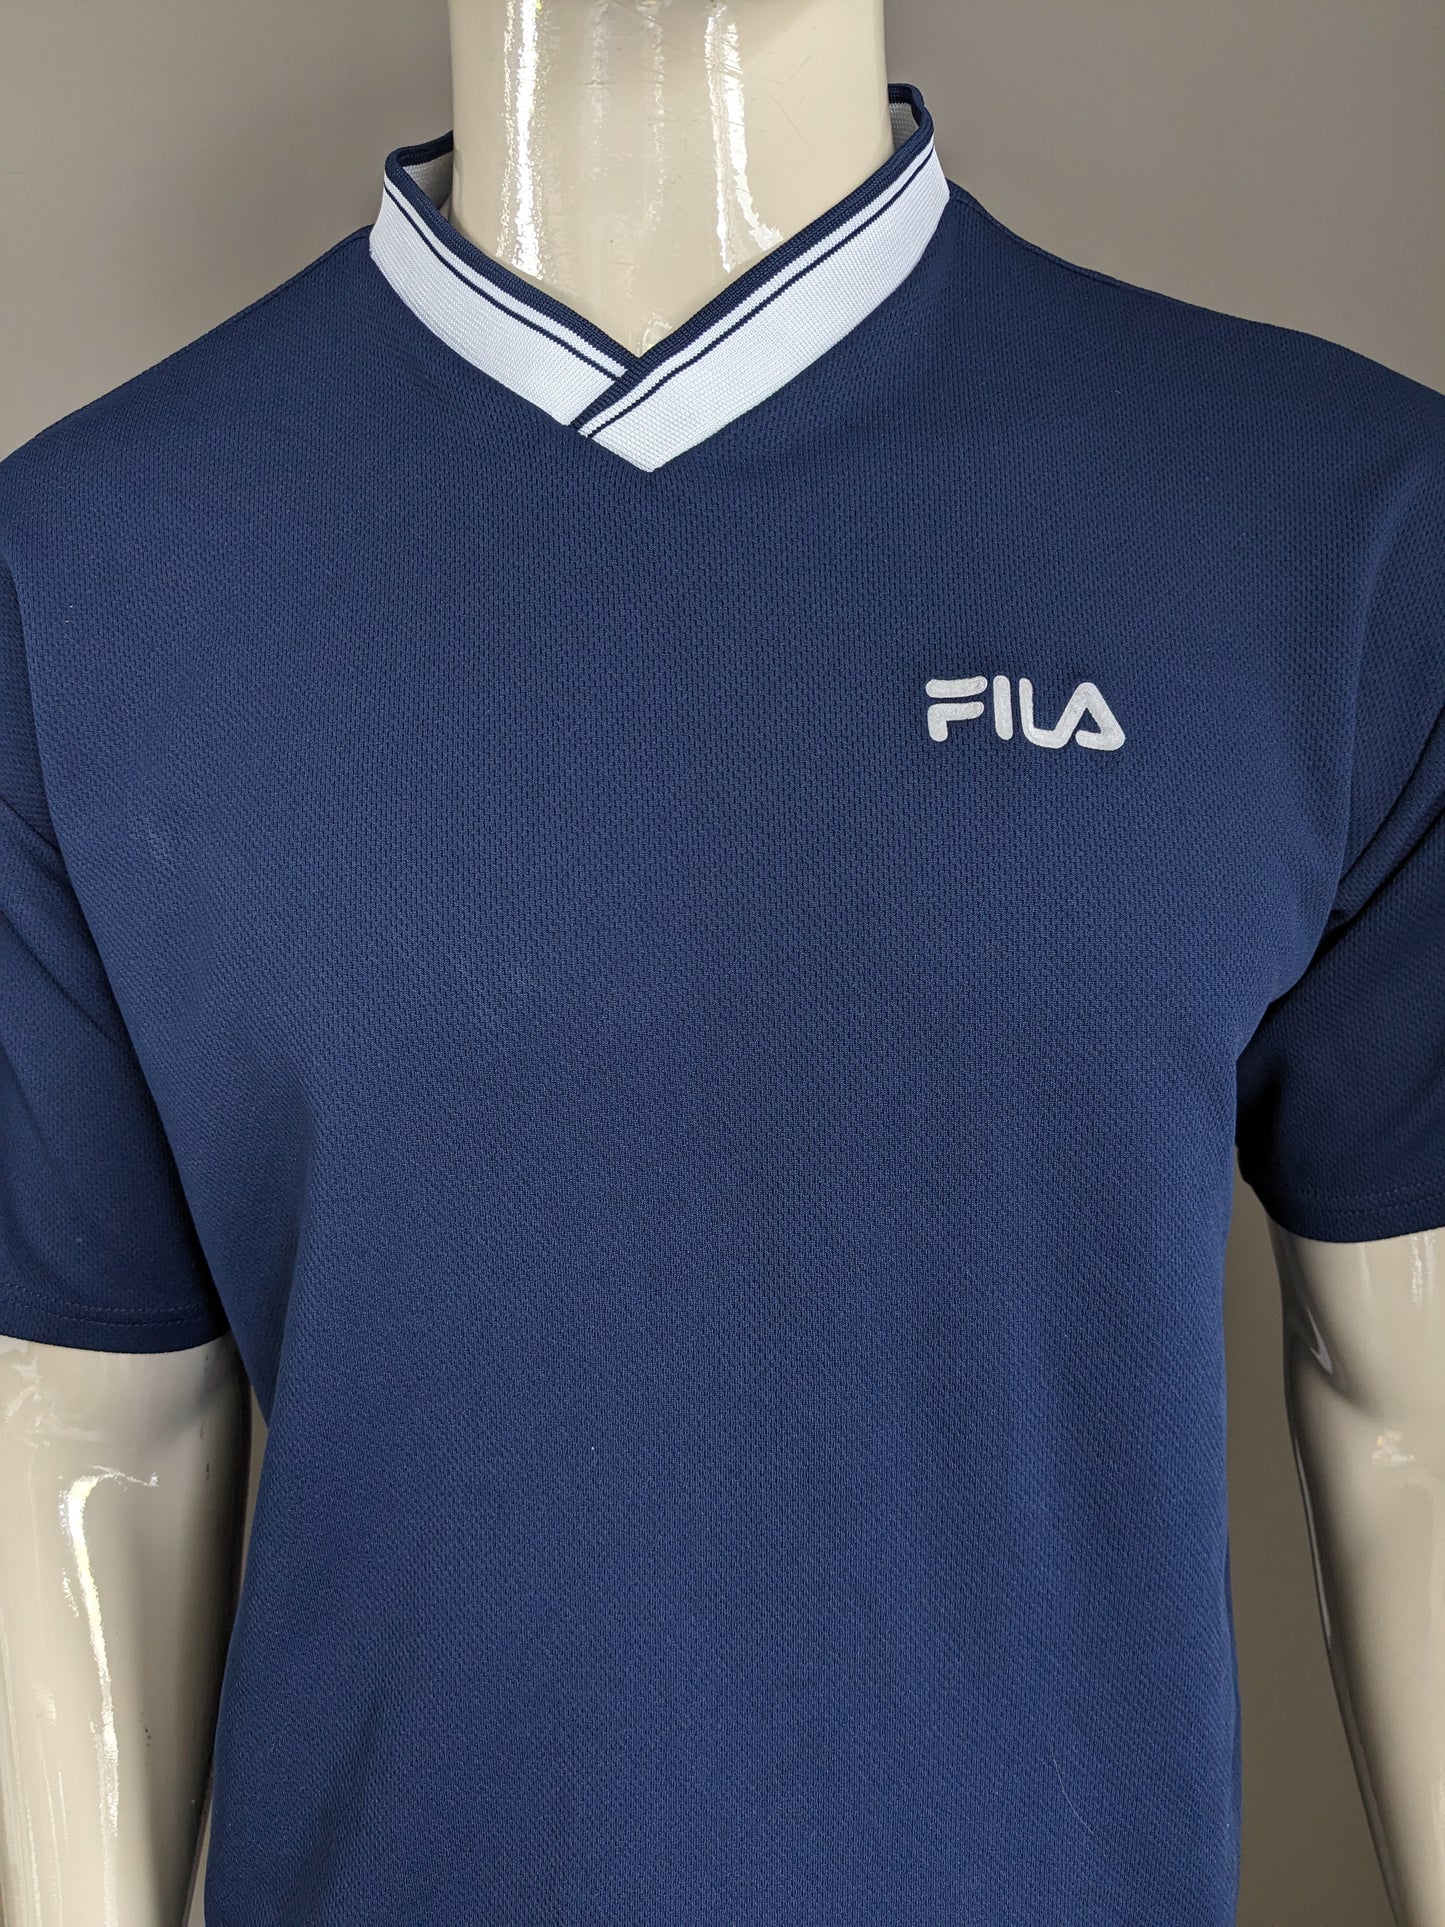 Vintage Fila shirt with V-neck. Dark blue colored. Size L.